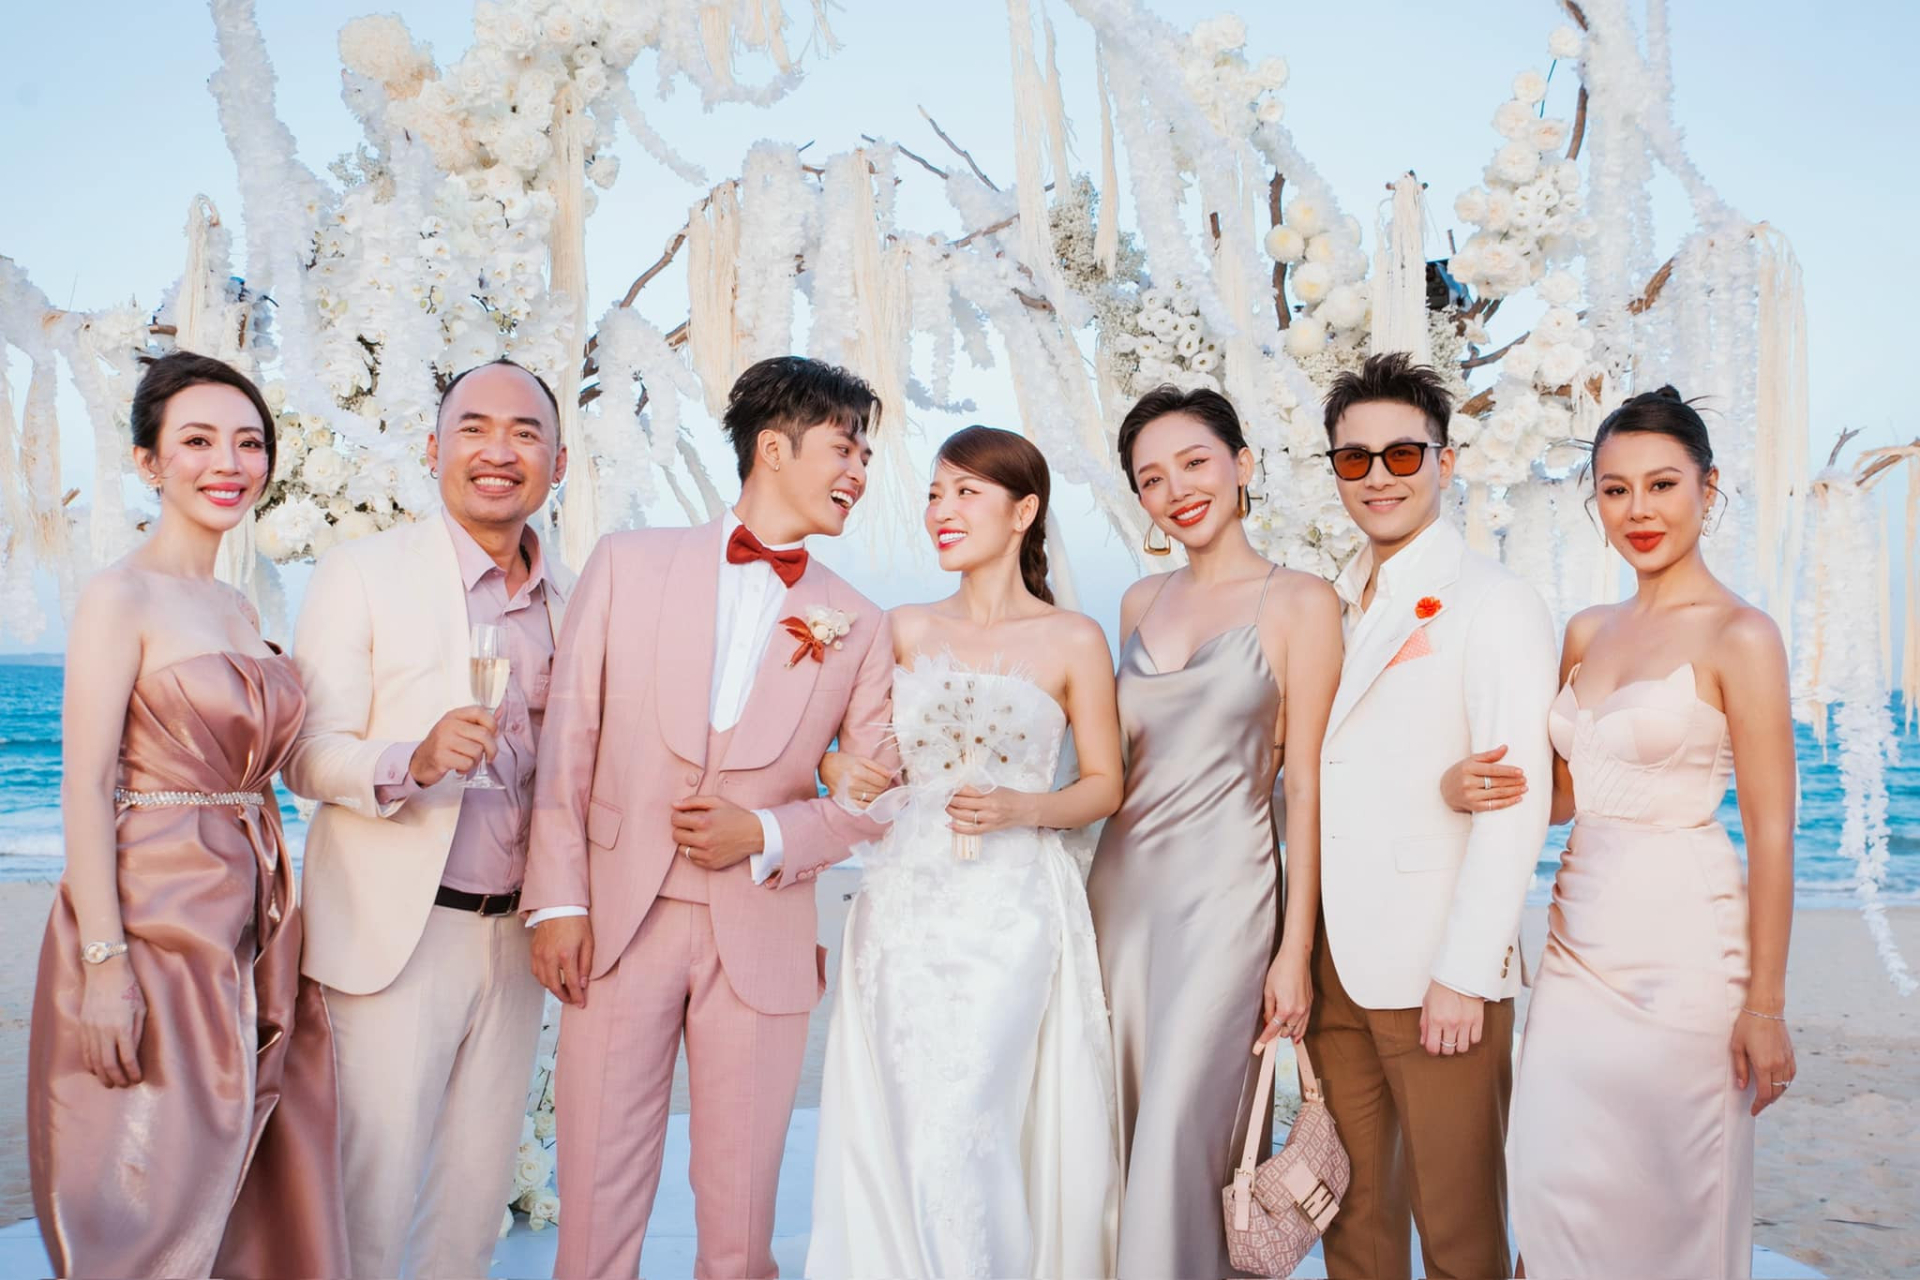 Hết Mạc Văn Khoa, 2 sao Việt bị “khui” tiền mừng đám cưới Puka, netizen choáng vì toàn vàng và đô la - ảnh 2